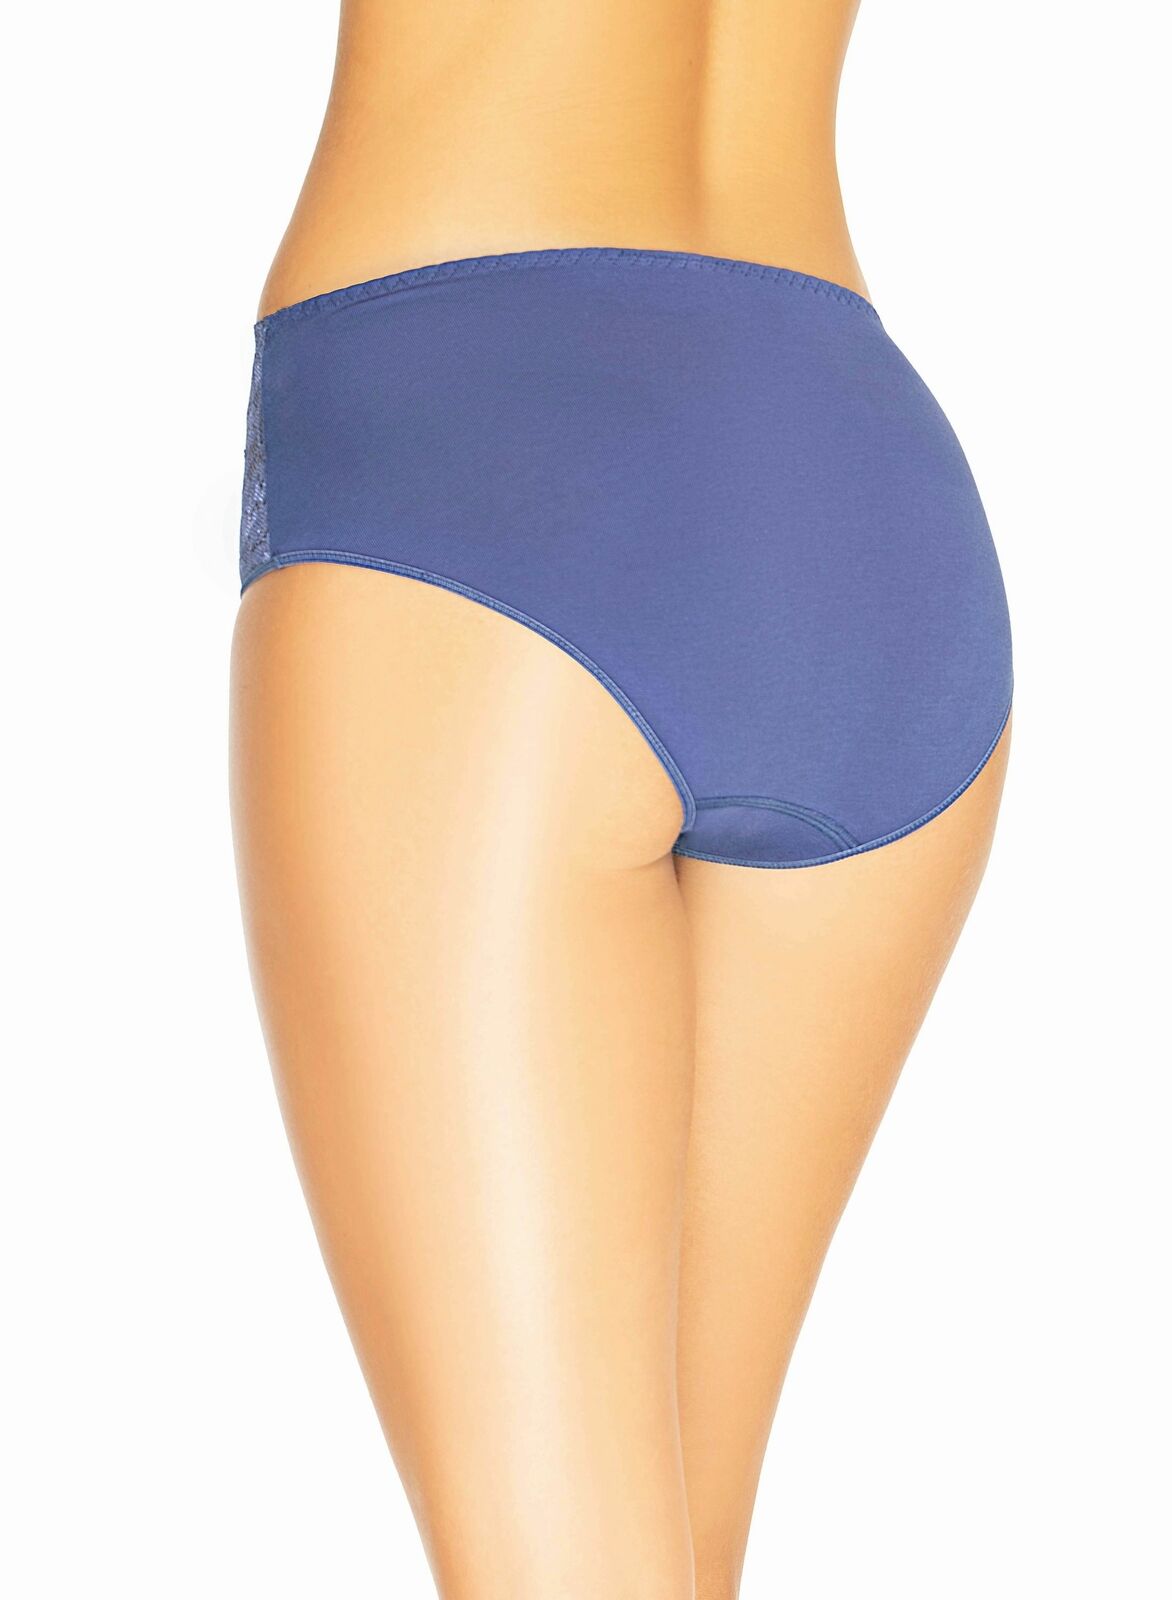 Women's Briefs Panty Cotton High Waistband Underwear Violetta